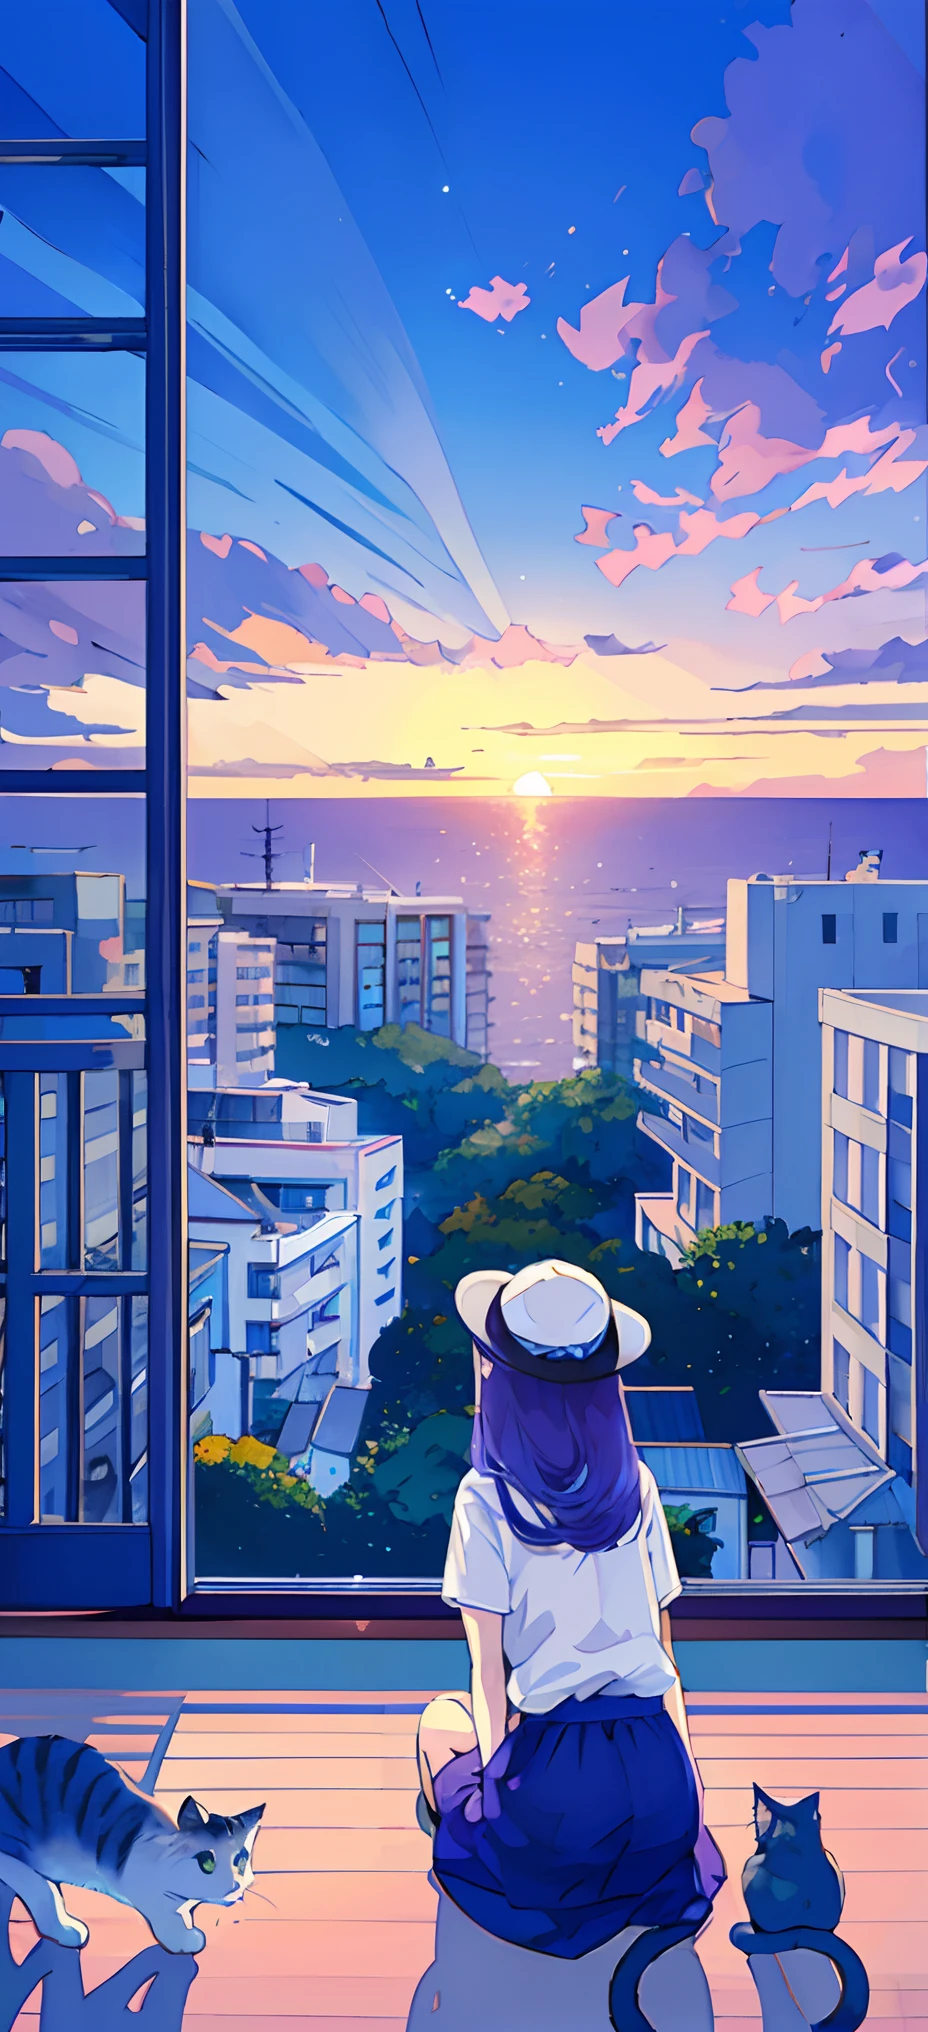 蓝色 T 恤、戴着白帽子、((猫))、海边的城市、可爱的小、回顾、8K、文件大小大、当你观察你的观众时、 俯瞰城市景观、午夜,细节、长发,柔和的颜色、紫色头发